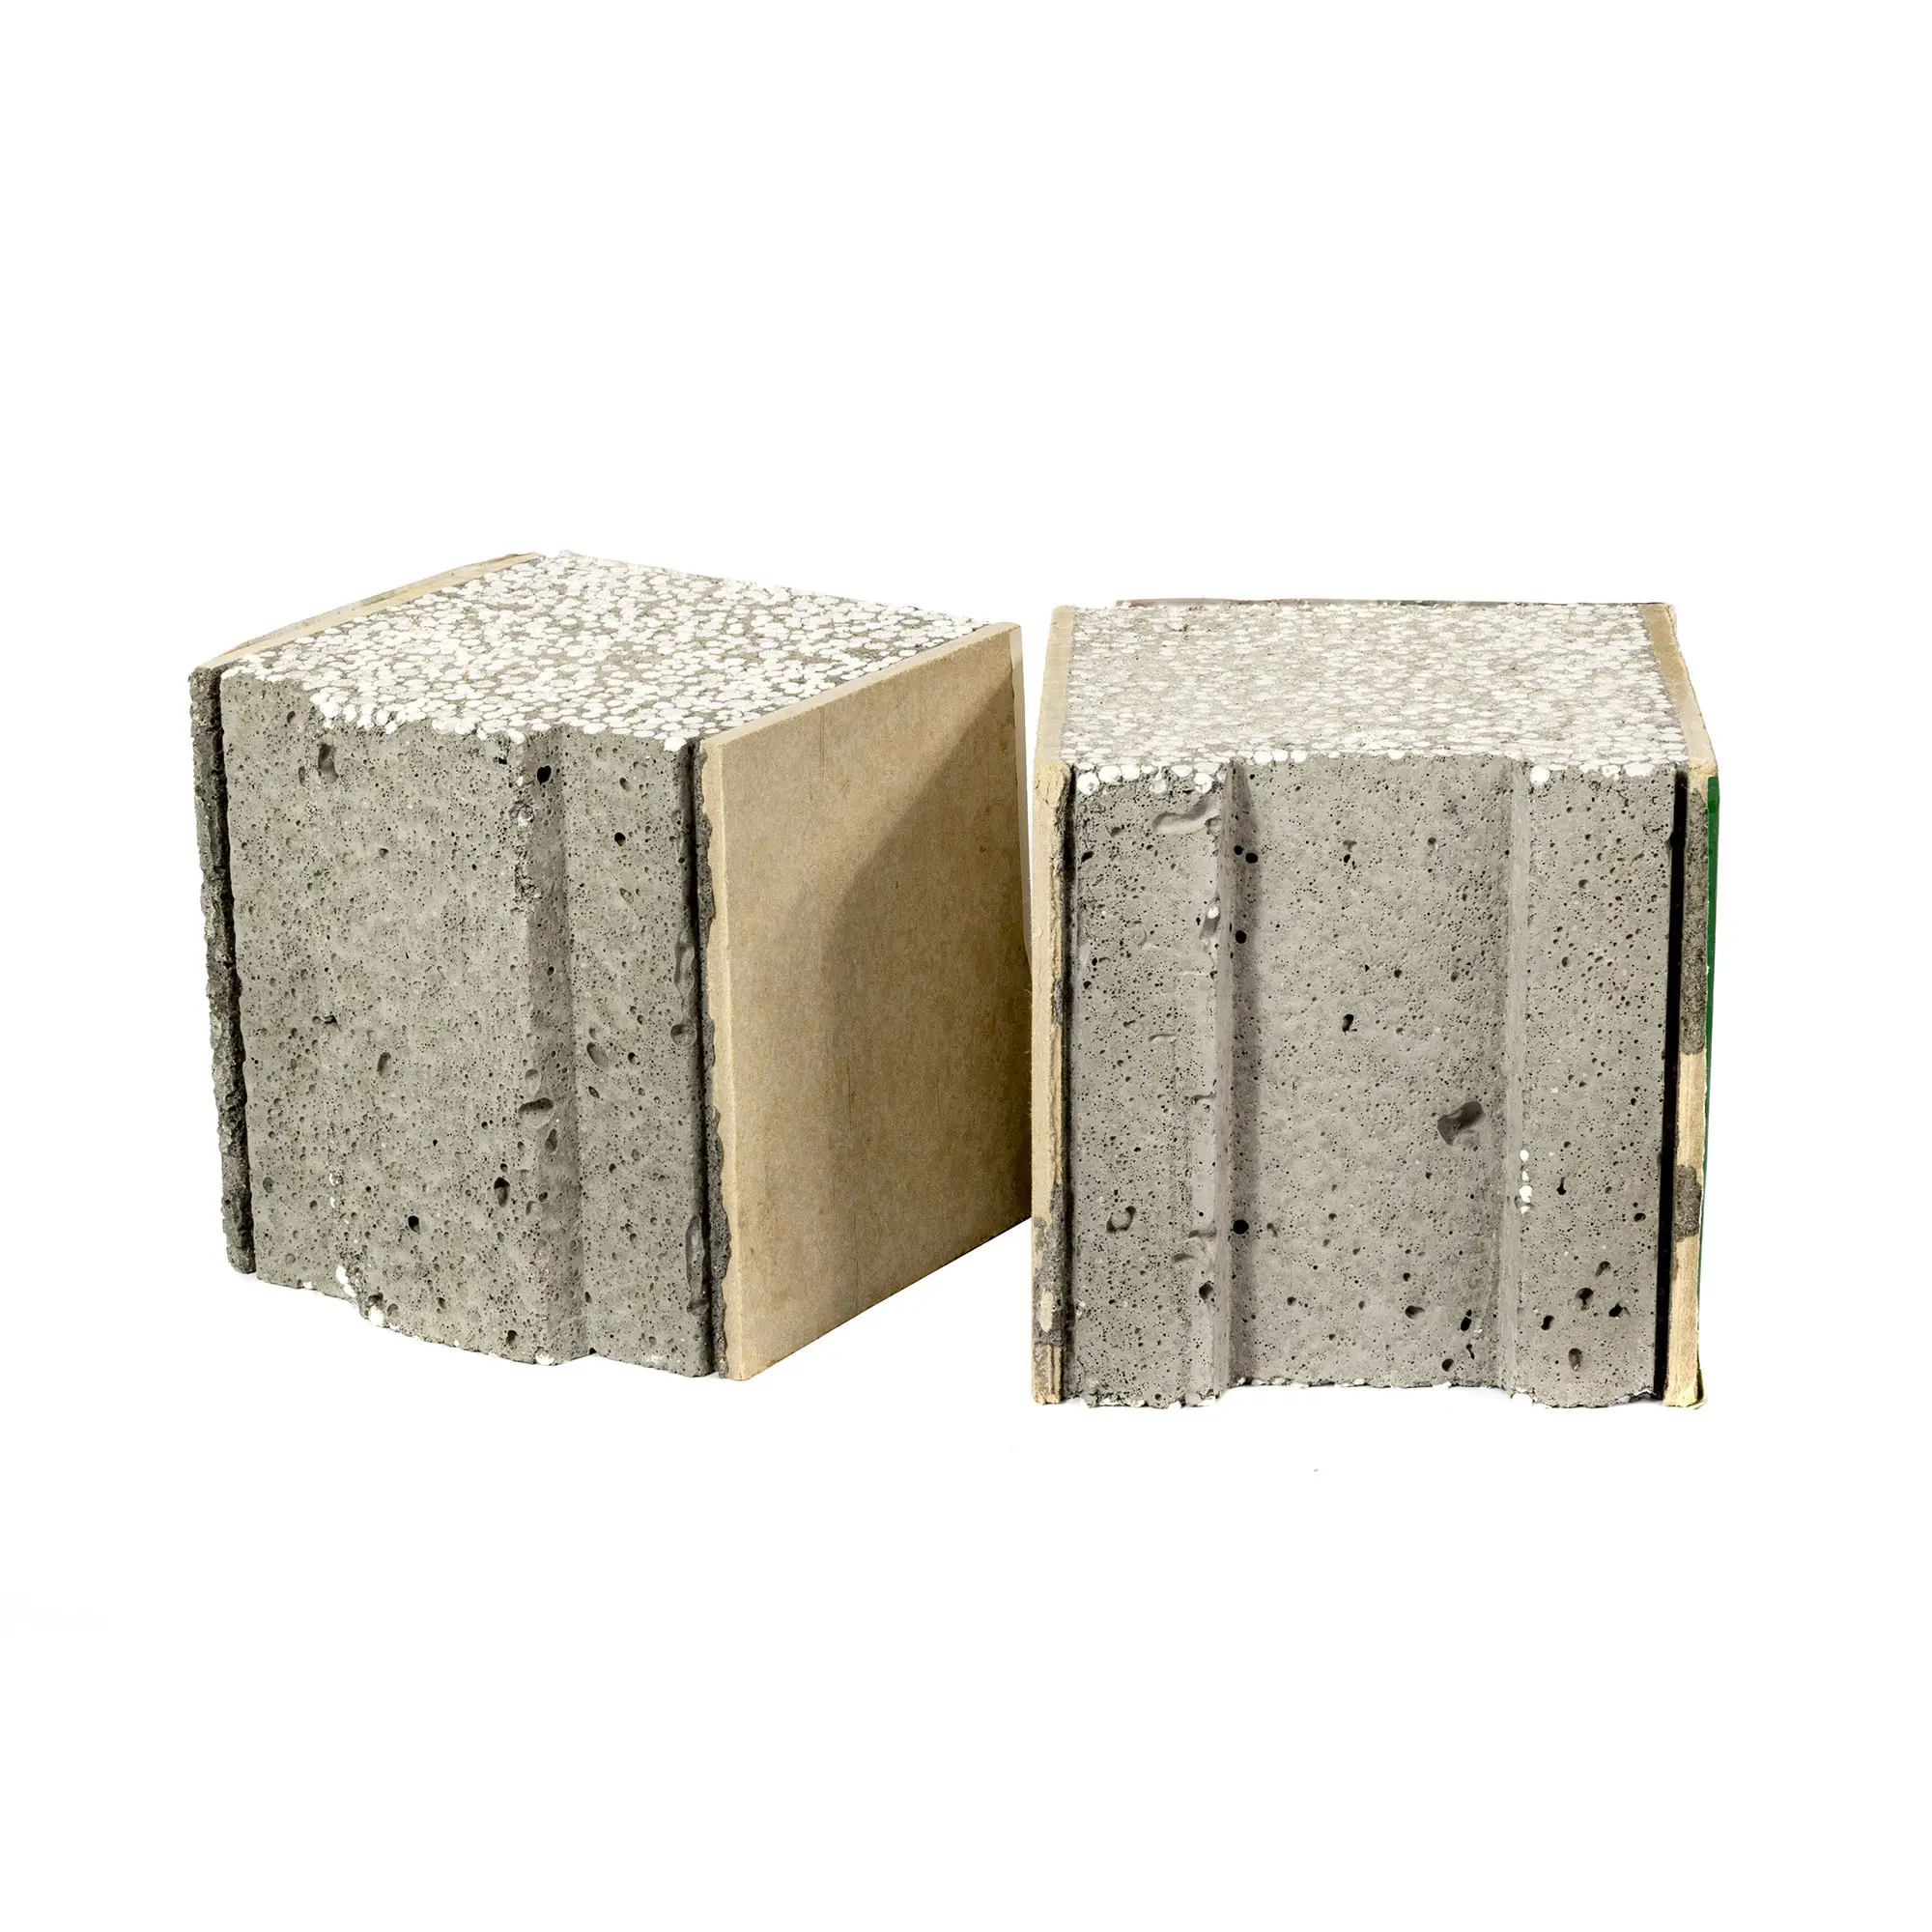 Painéis sanduíche de cimento eps ecológicos e ecológicos, novos materiais de construção, economia de energia, placas de paredes e construção de paredes